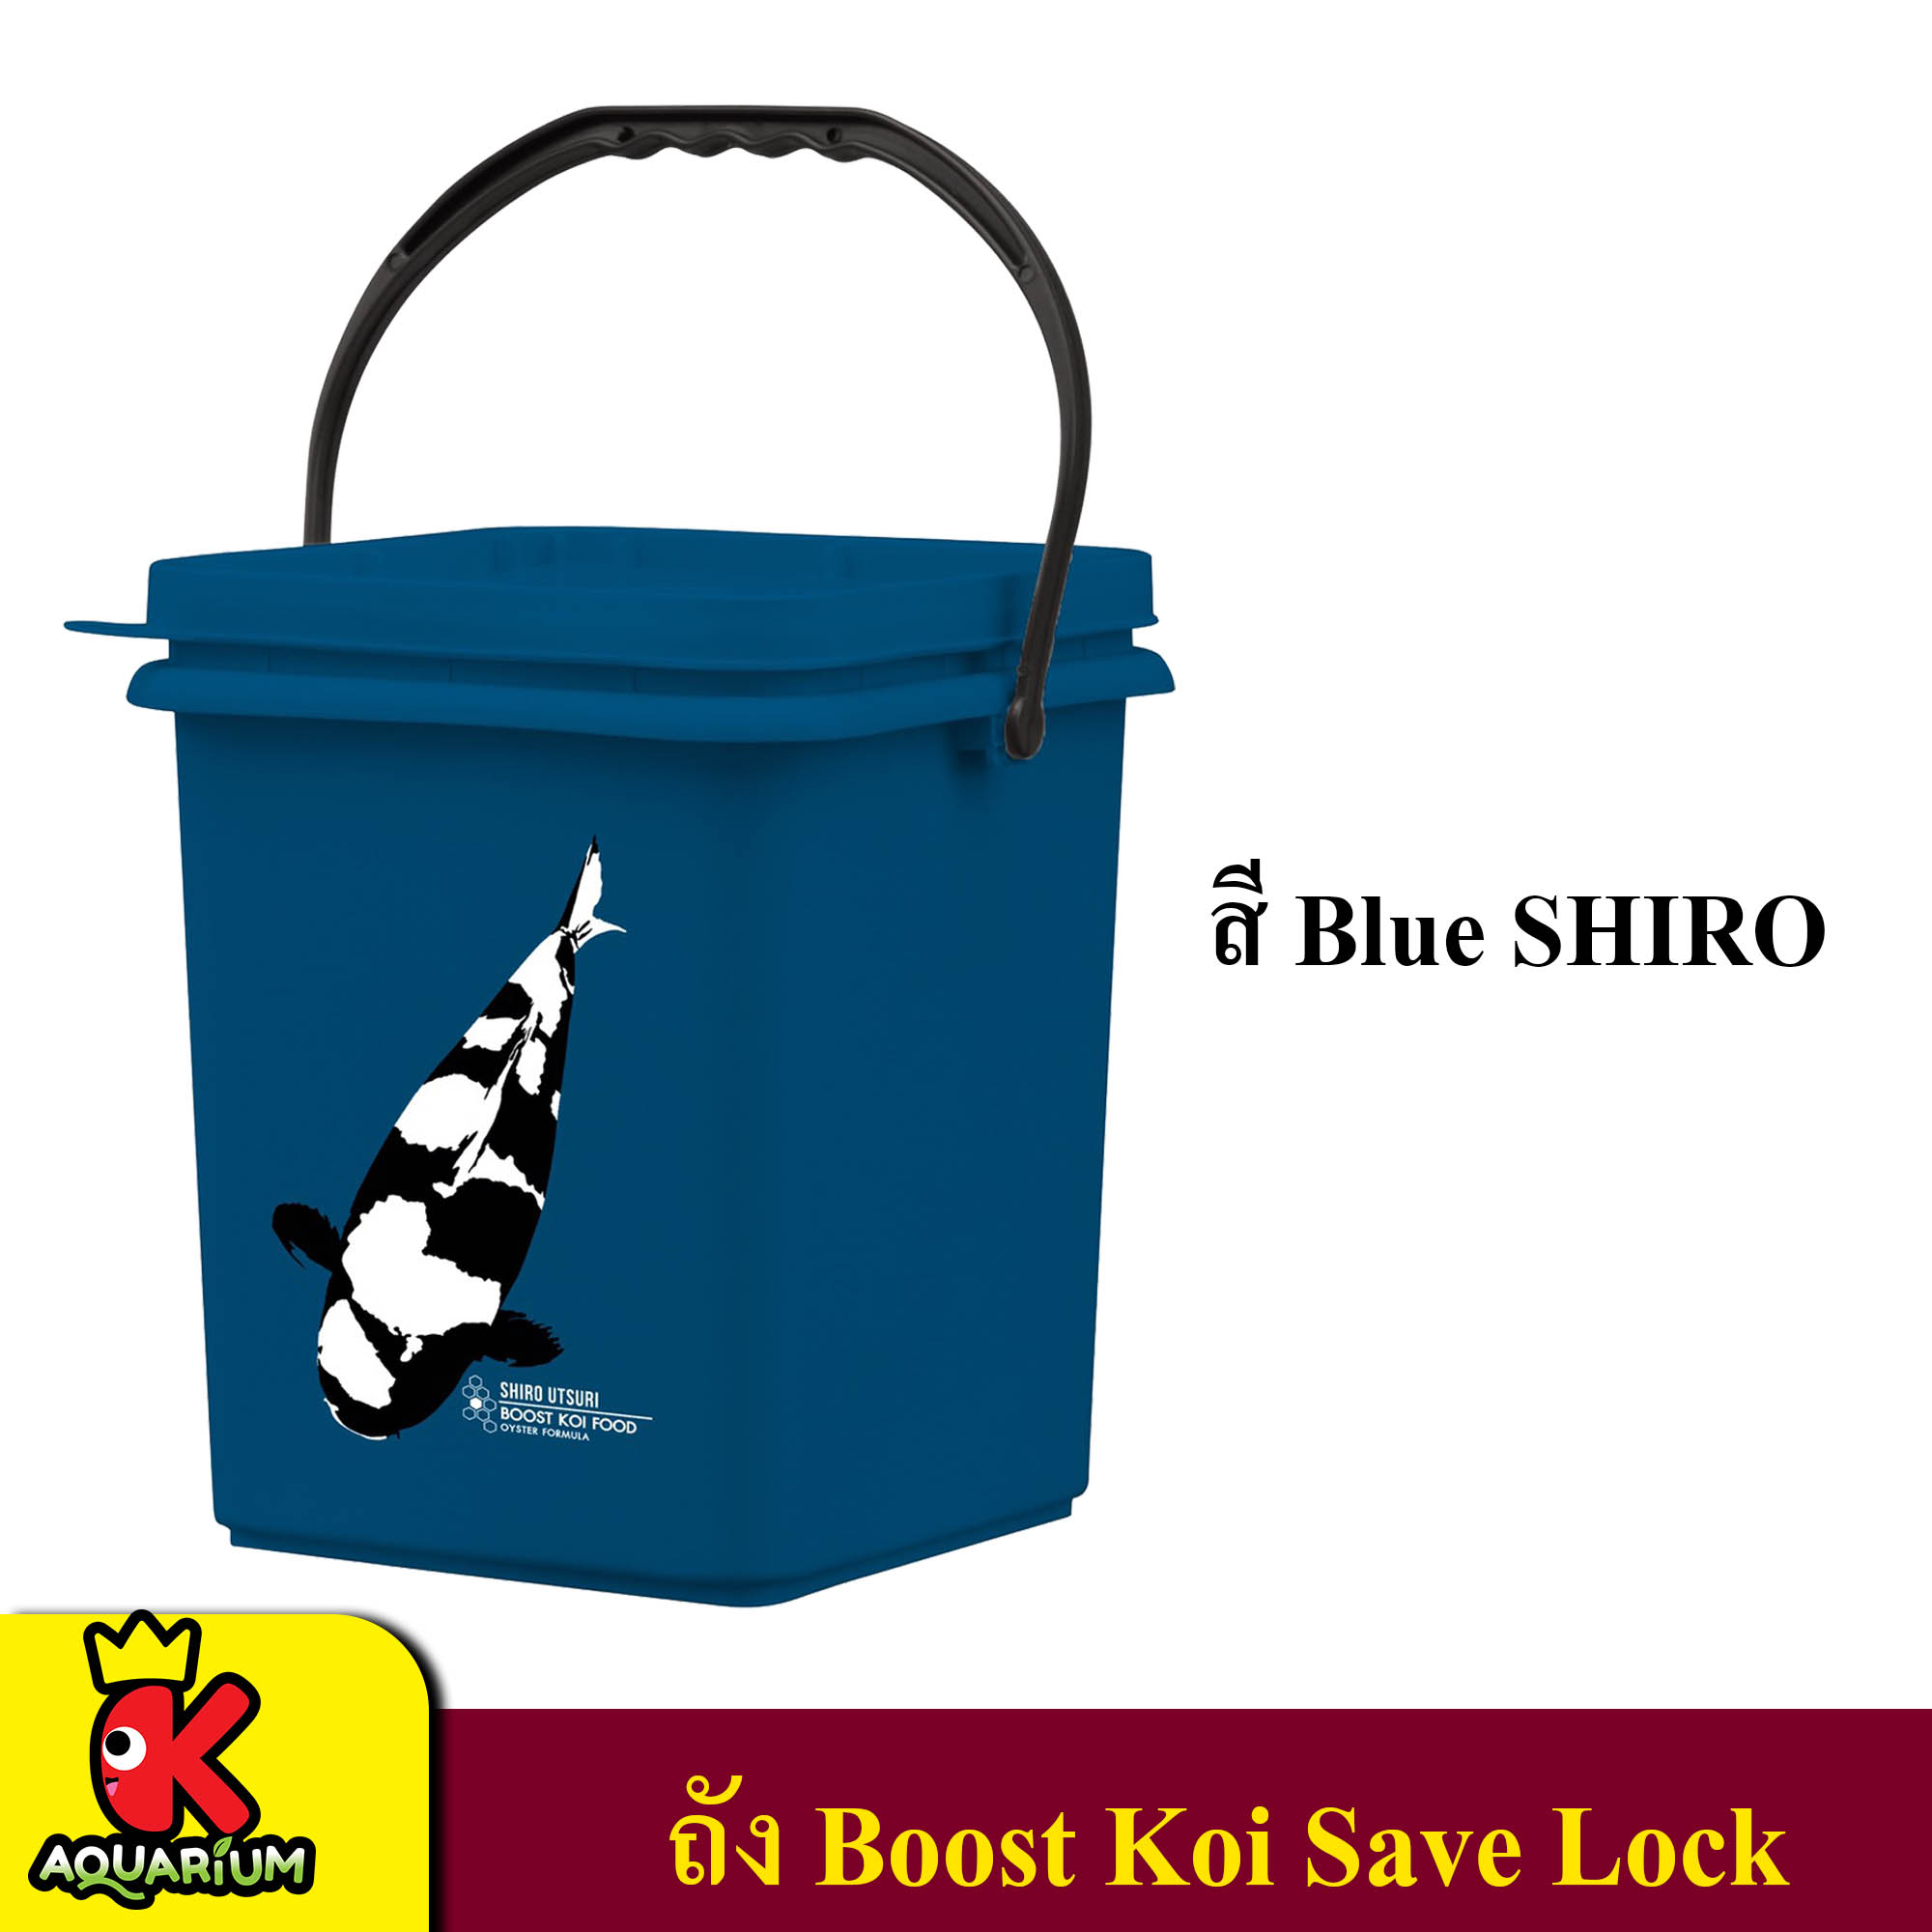 ถังใส่อาหารปลา BOOST KOI SAVE LOCK ความจุ 20 ลิตร สี Blue SHIRO